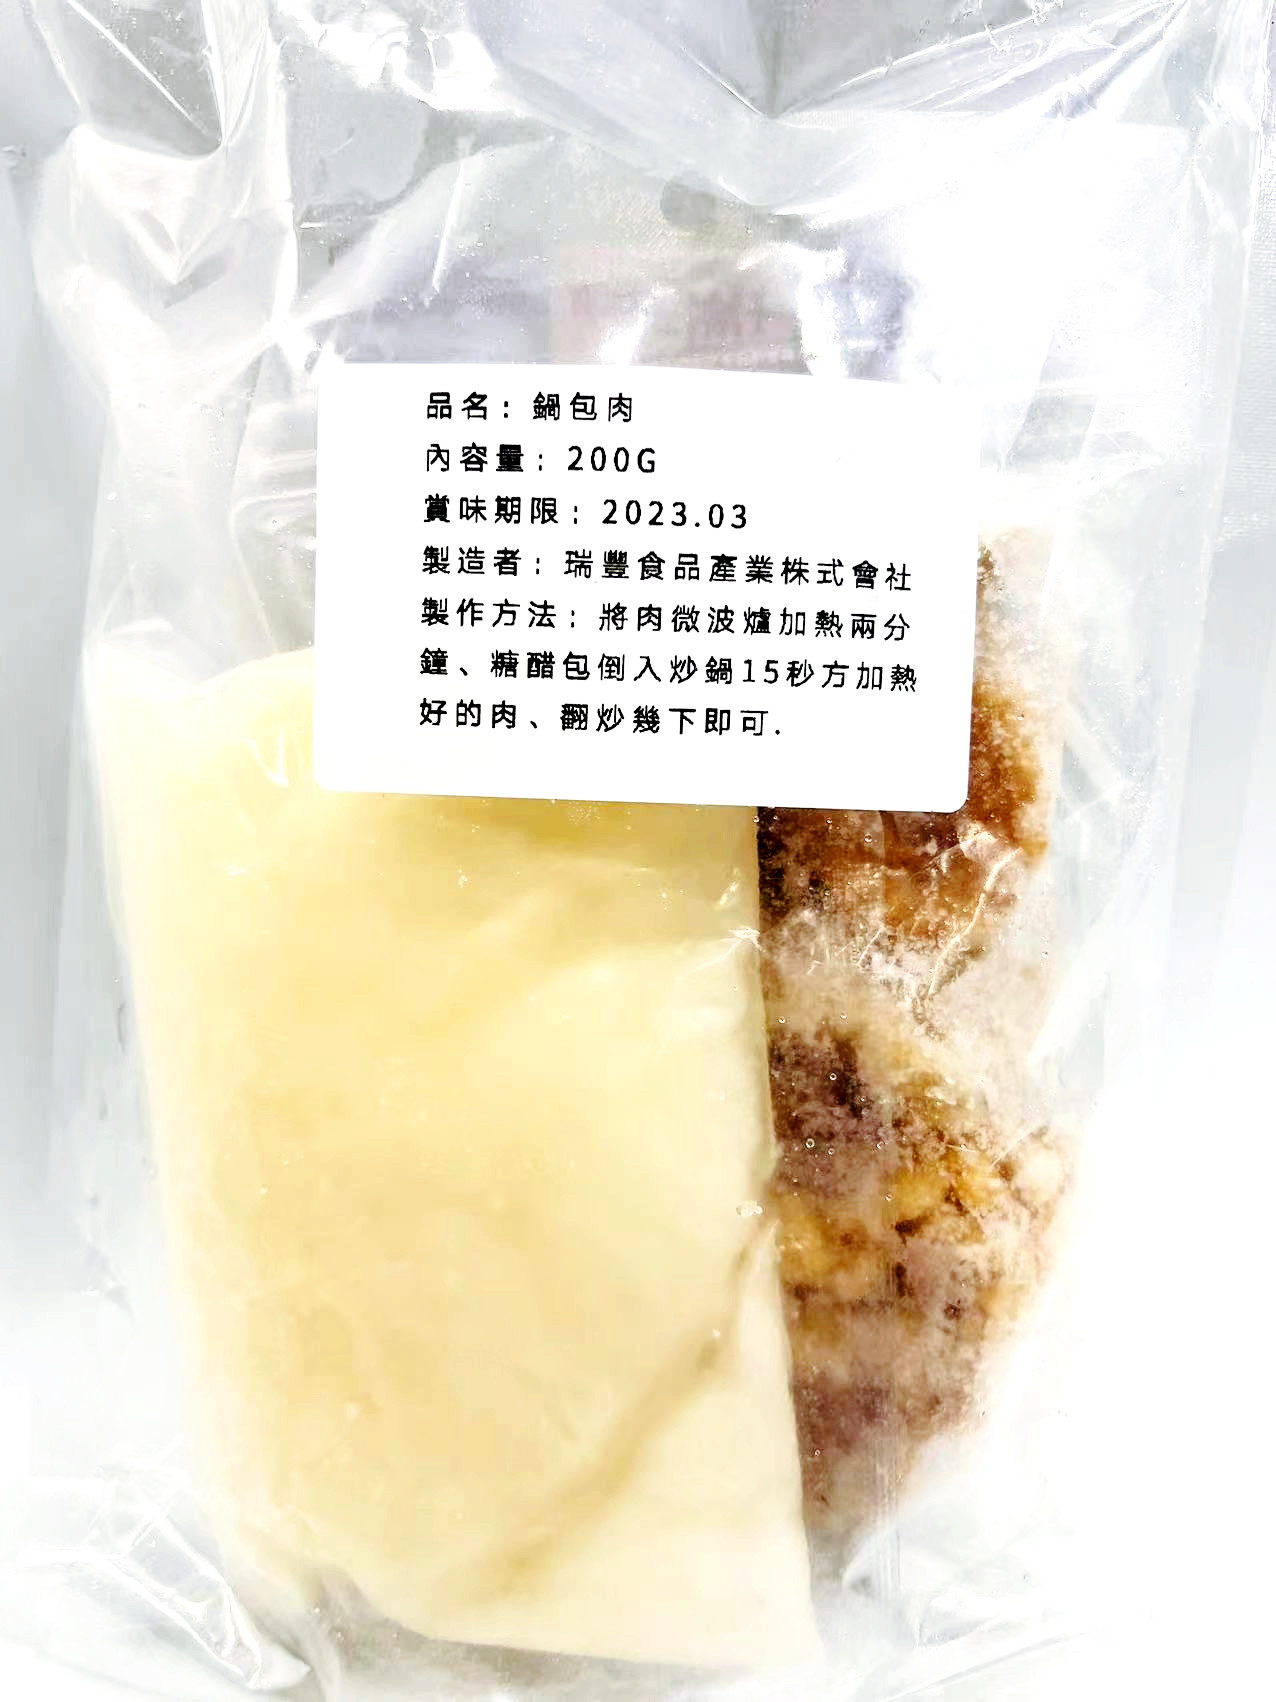 日本メーカー新品 試しセール 日本製造 瑞豊 鍋包肉 200g 冷凍商品 中華料理 ゴウバオロウ ゴウバオロー 冷凍惣菜 真空パックでない場合がございます